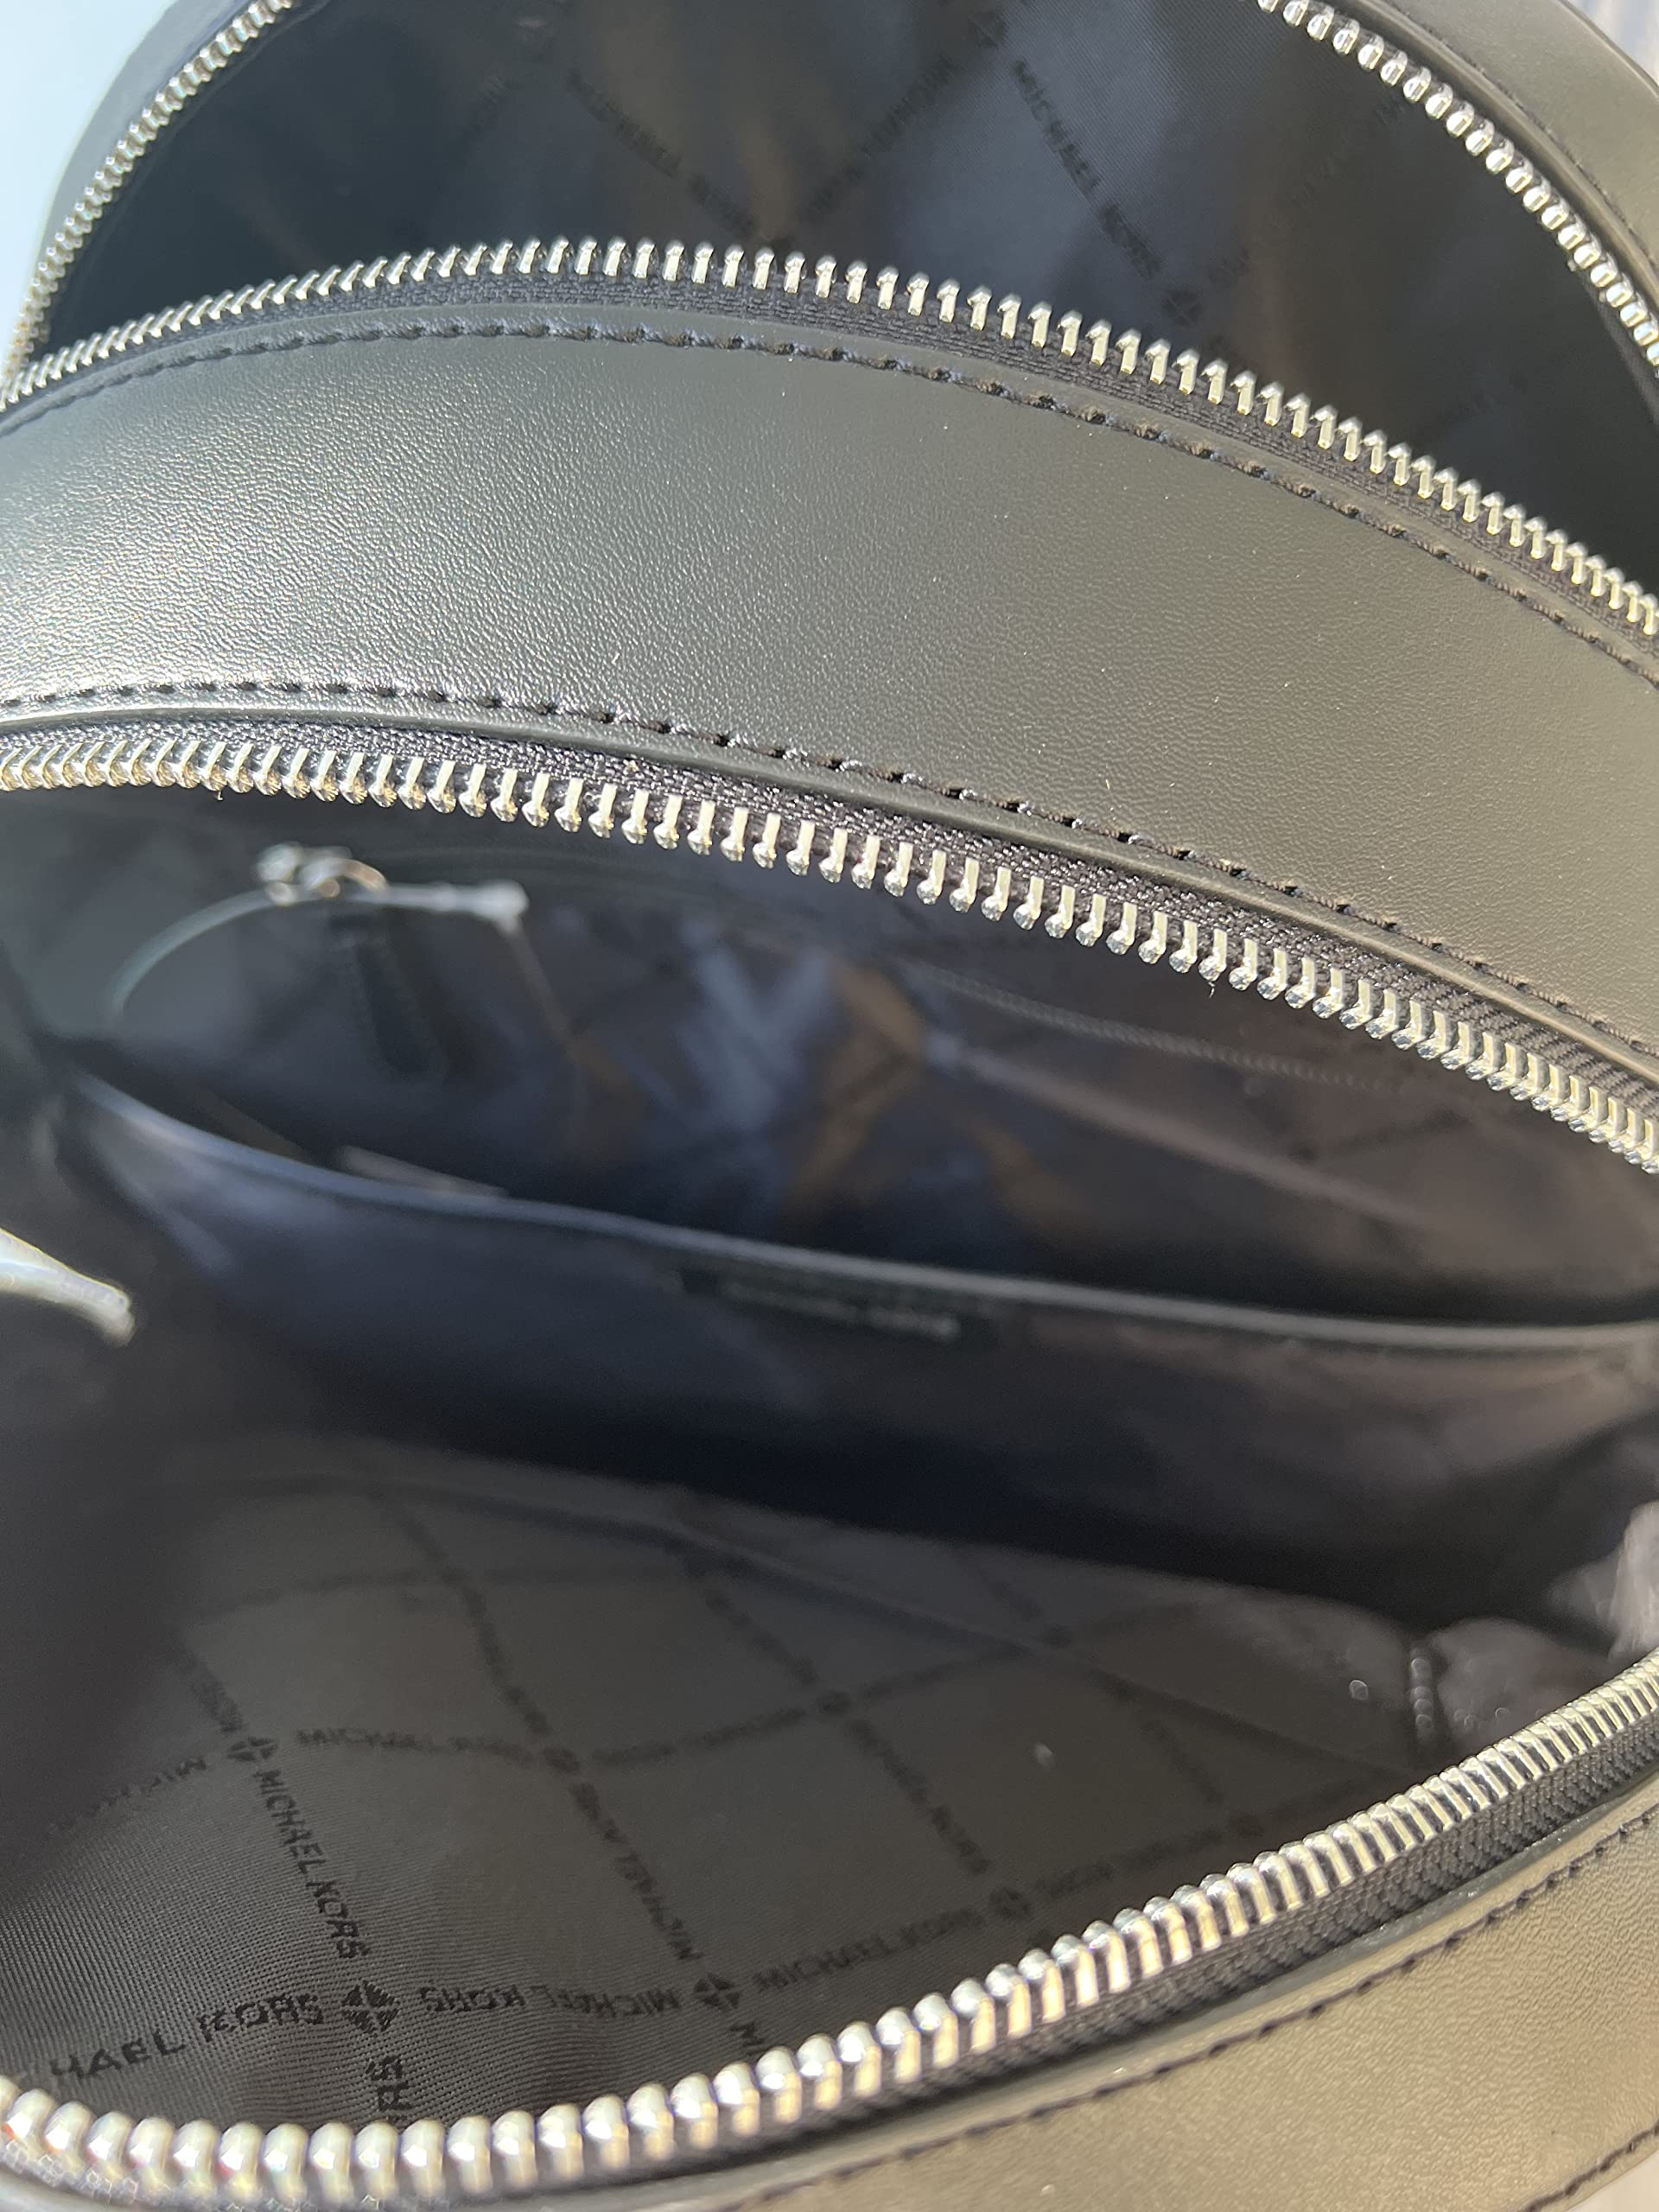 Michael Kors Jaycee Large Backpack School Bag Bundled Jet Set Travel Large Trifold Wallet MK Signature